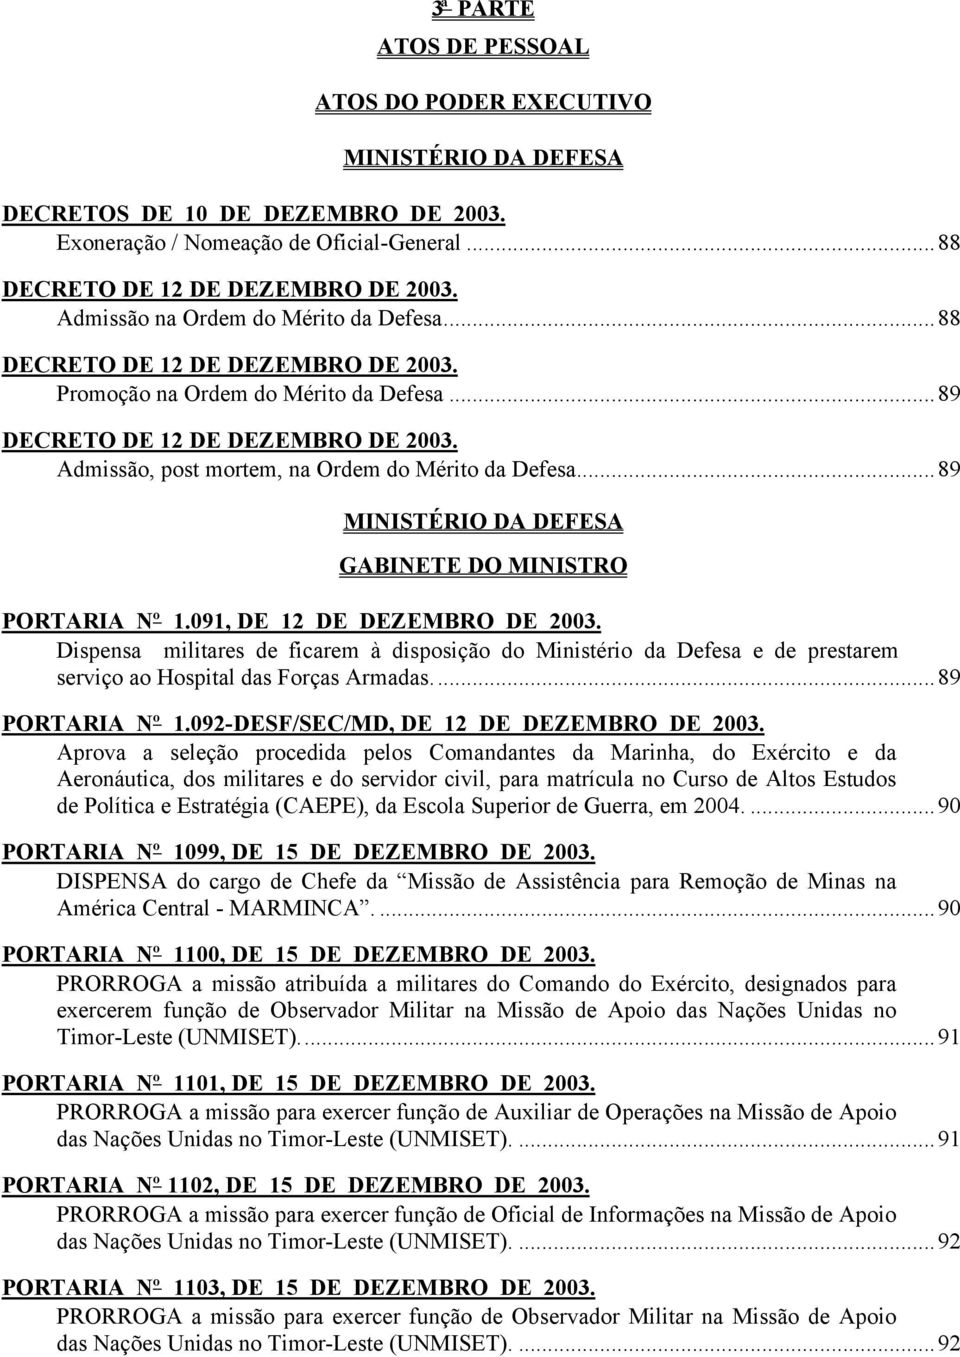 Admissão, post mortem, na Ordem do Mérito da Defesa...89 MINISTÉRIO DA DEFESA GABINETE DO MINISTRO PORTARIA Nº 1.091, DE 12 DE DEZEMBRO DE 2003.